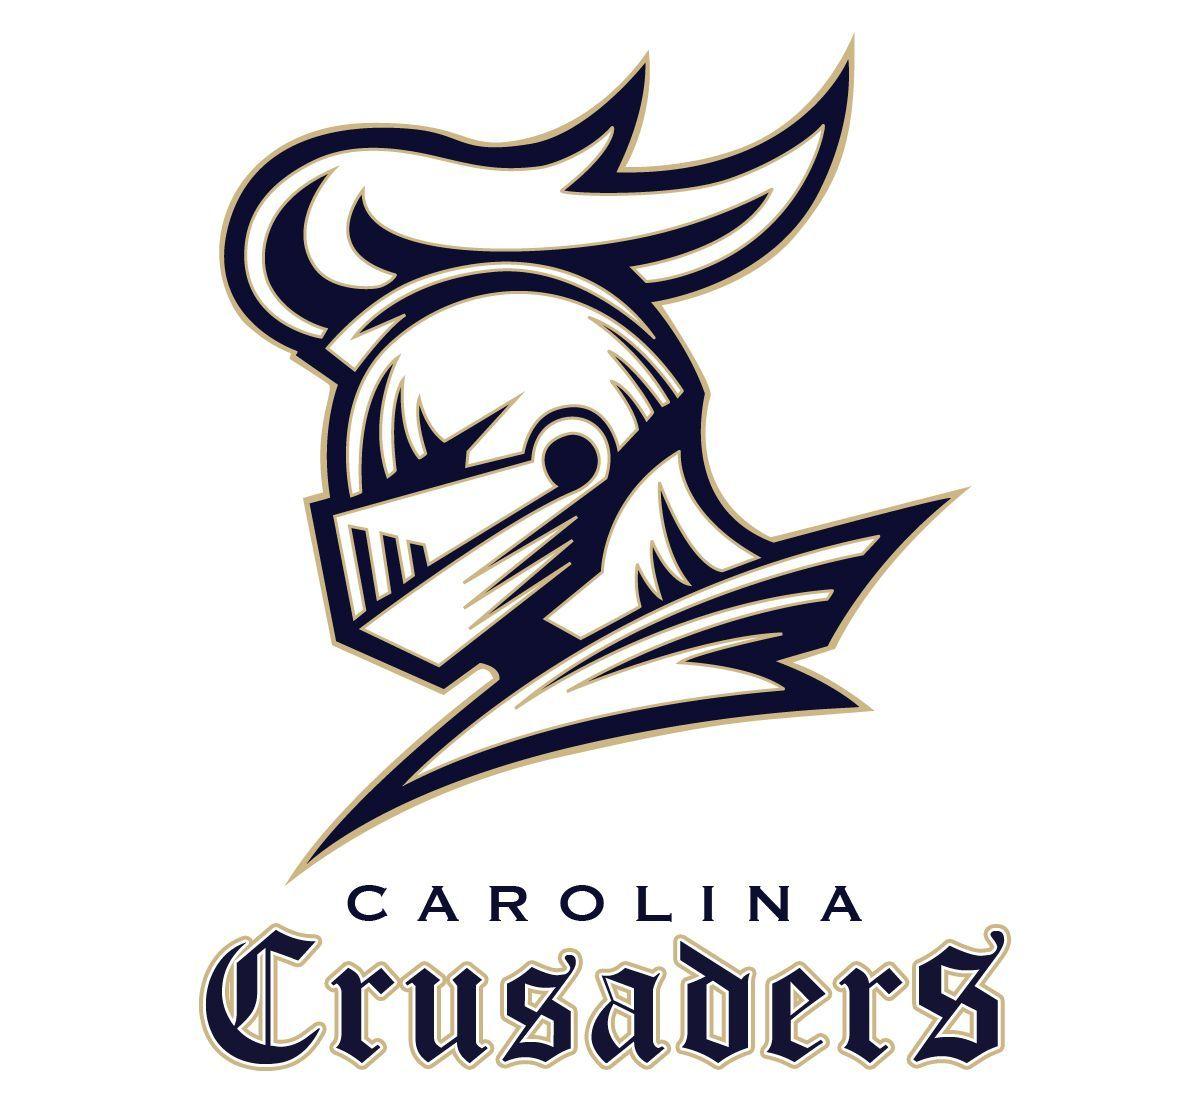 Crusaders Basketball Logo - Pin by Ryan Murphy on CTK Logo | Pinterest | Logos, Sports logo and ...